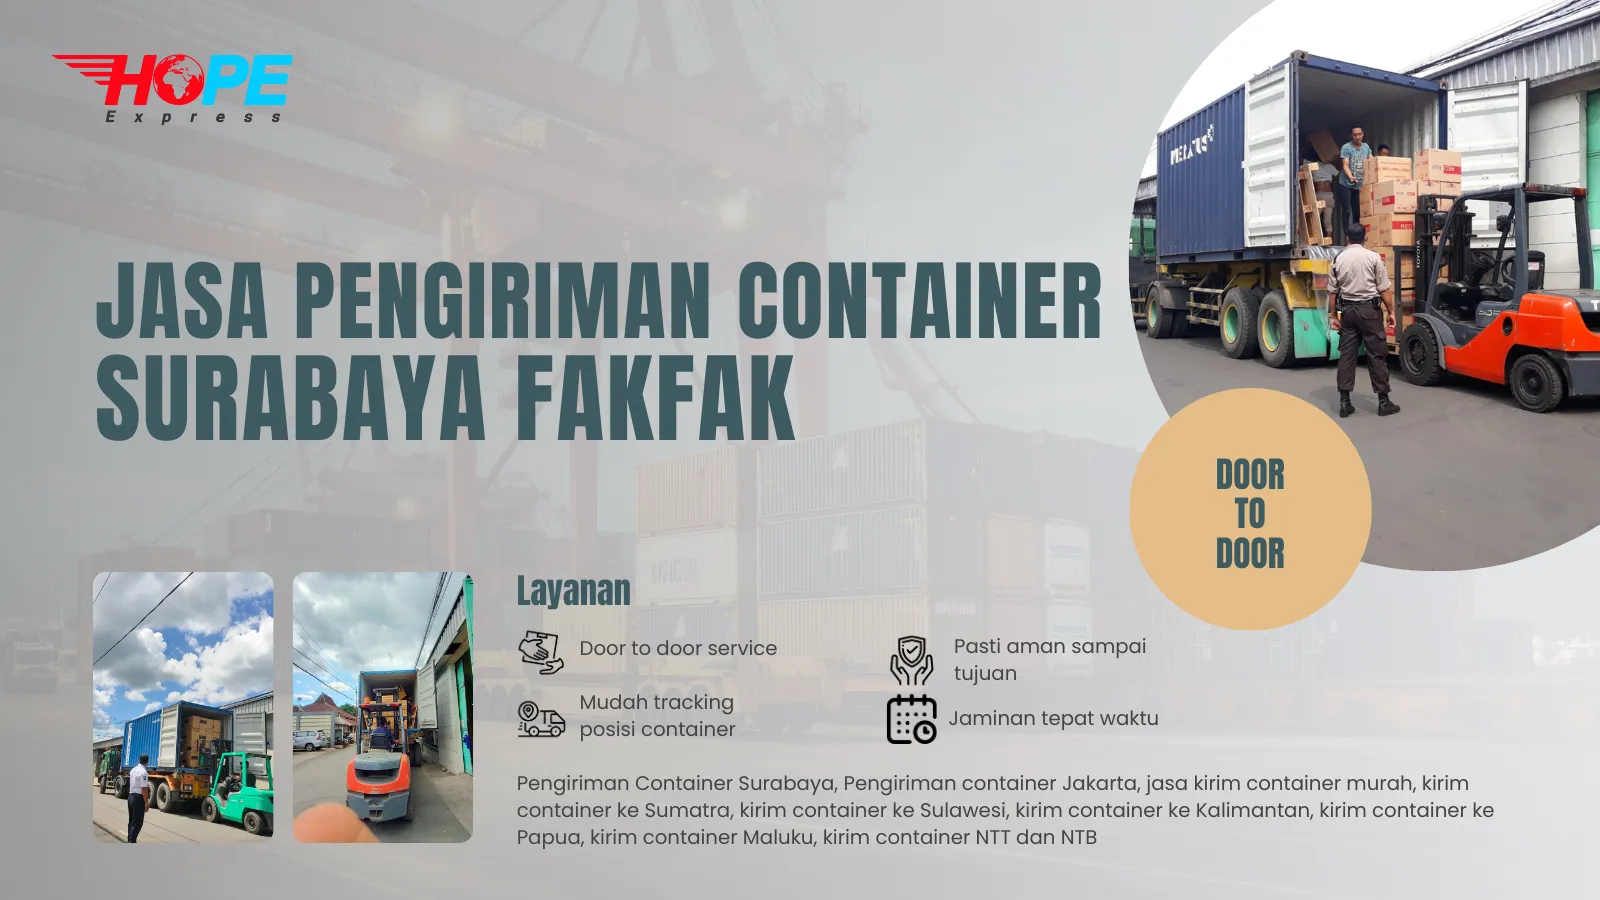 Jasa Pengiriman Container Surabaya Fakfak